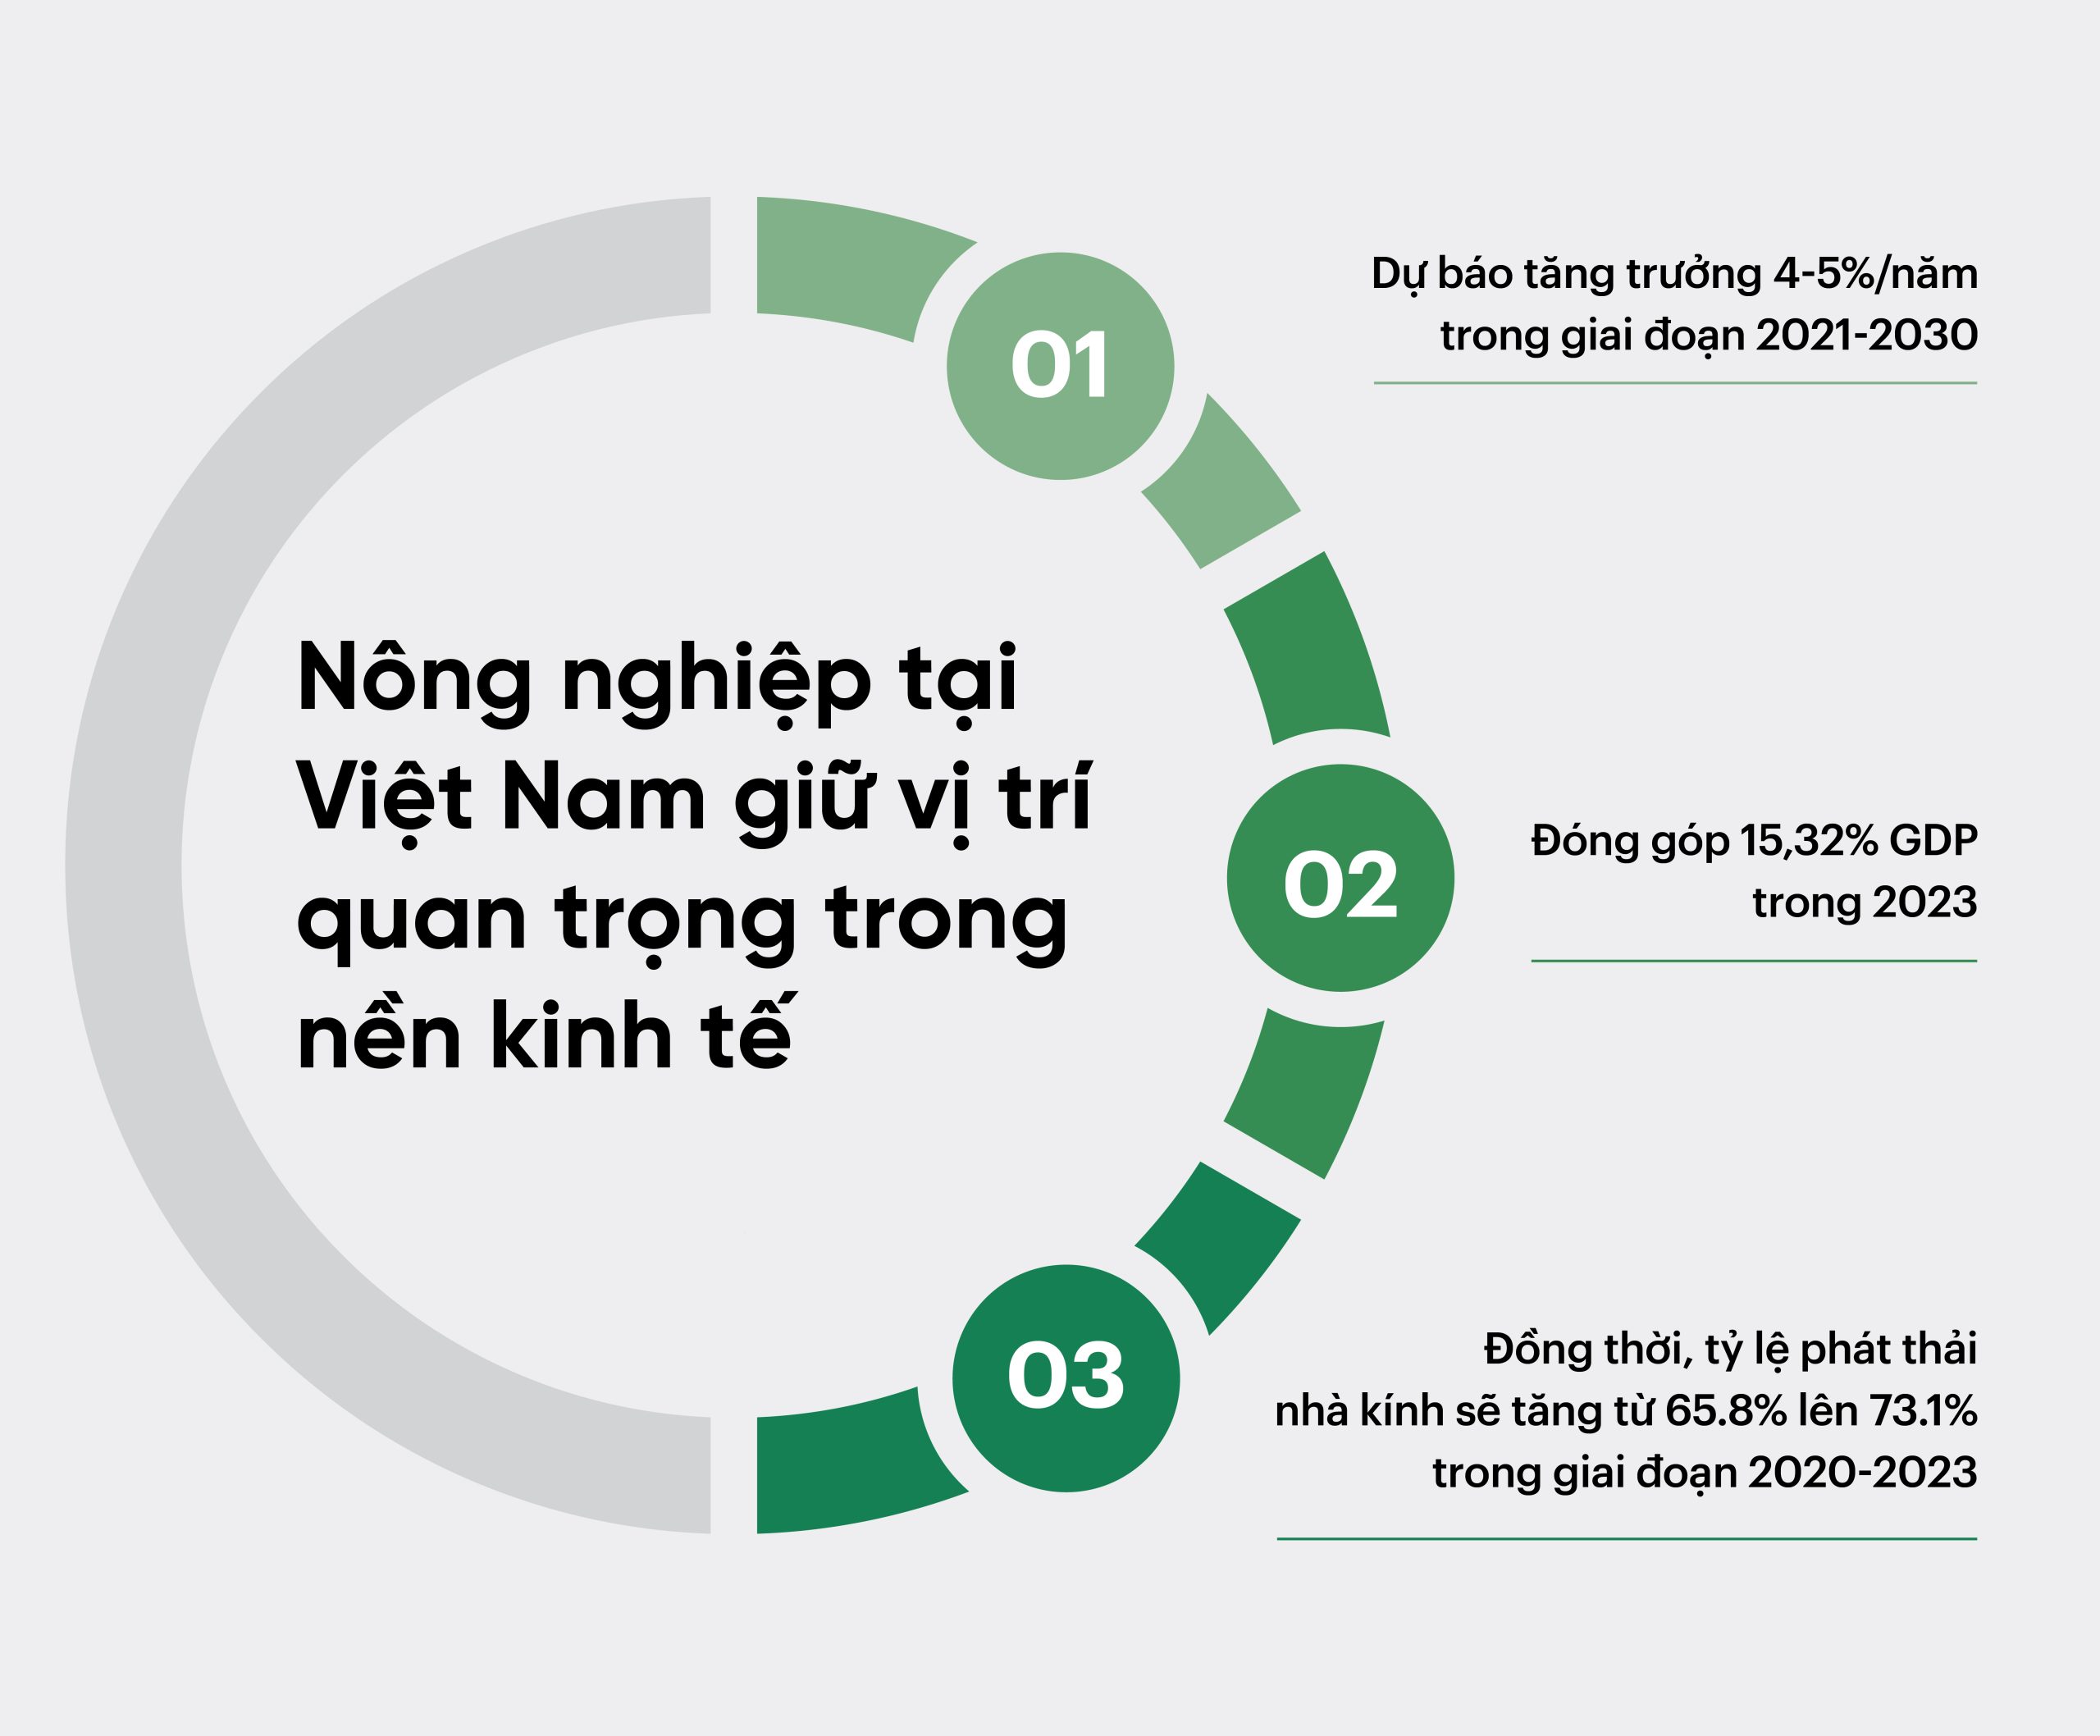 Nông nghiệp tại Việt Nam giữ vị trí quan trọng trong nền kinh tế